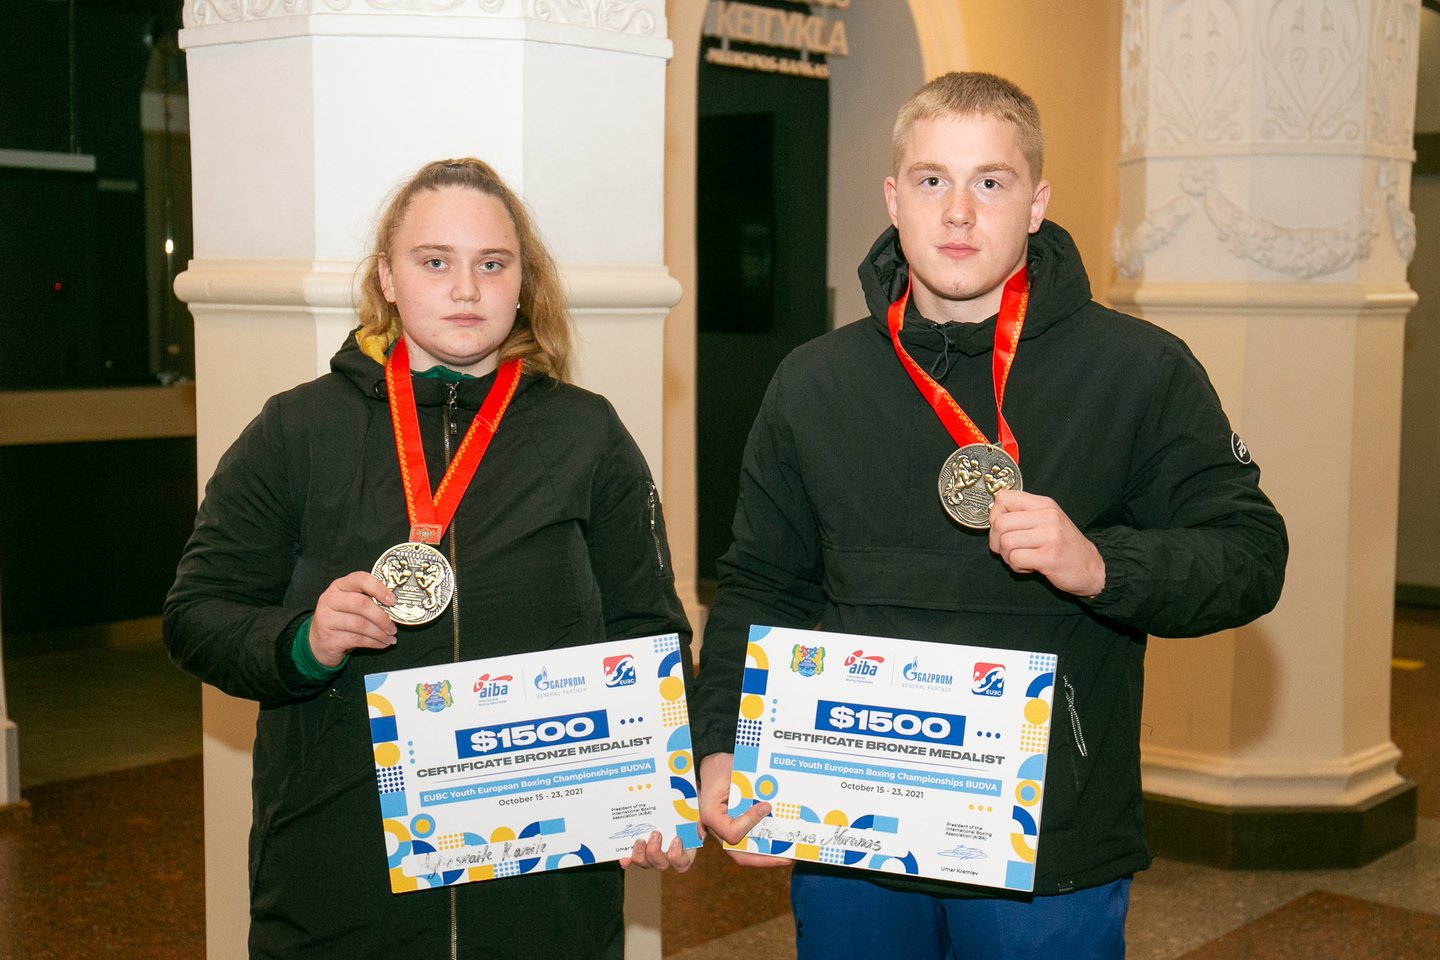 Jaunieji boksininkai iškovojo bronzos medalius.<br> S.Čirbos nuotr.